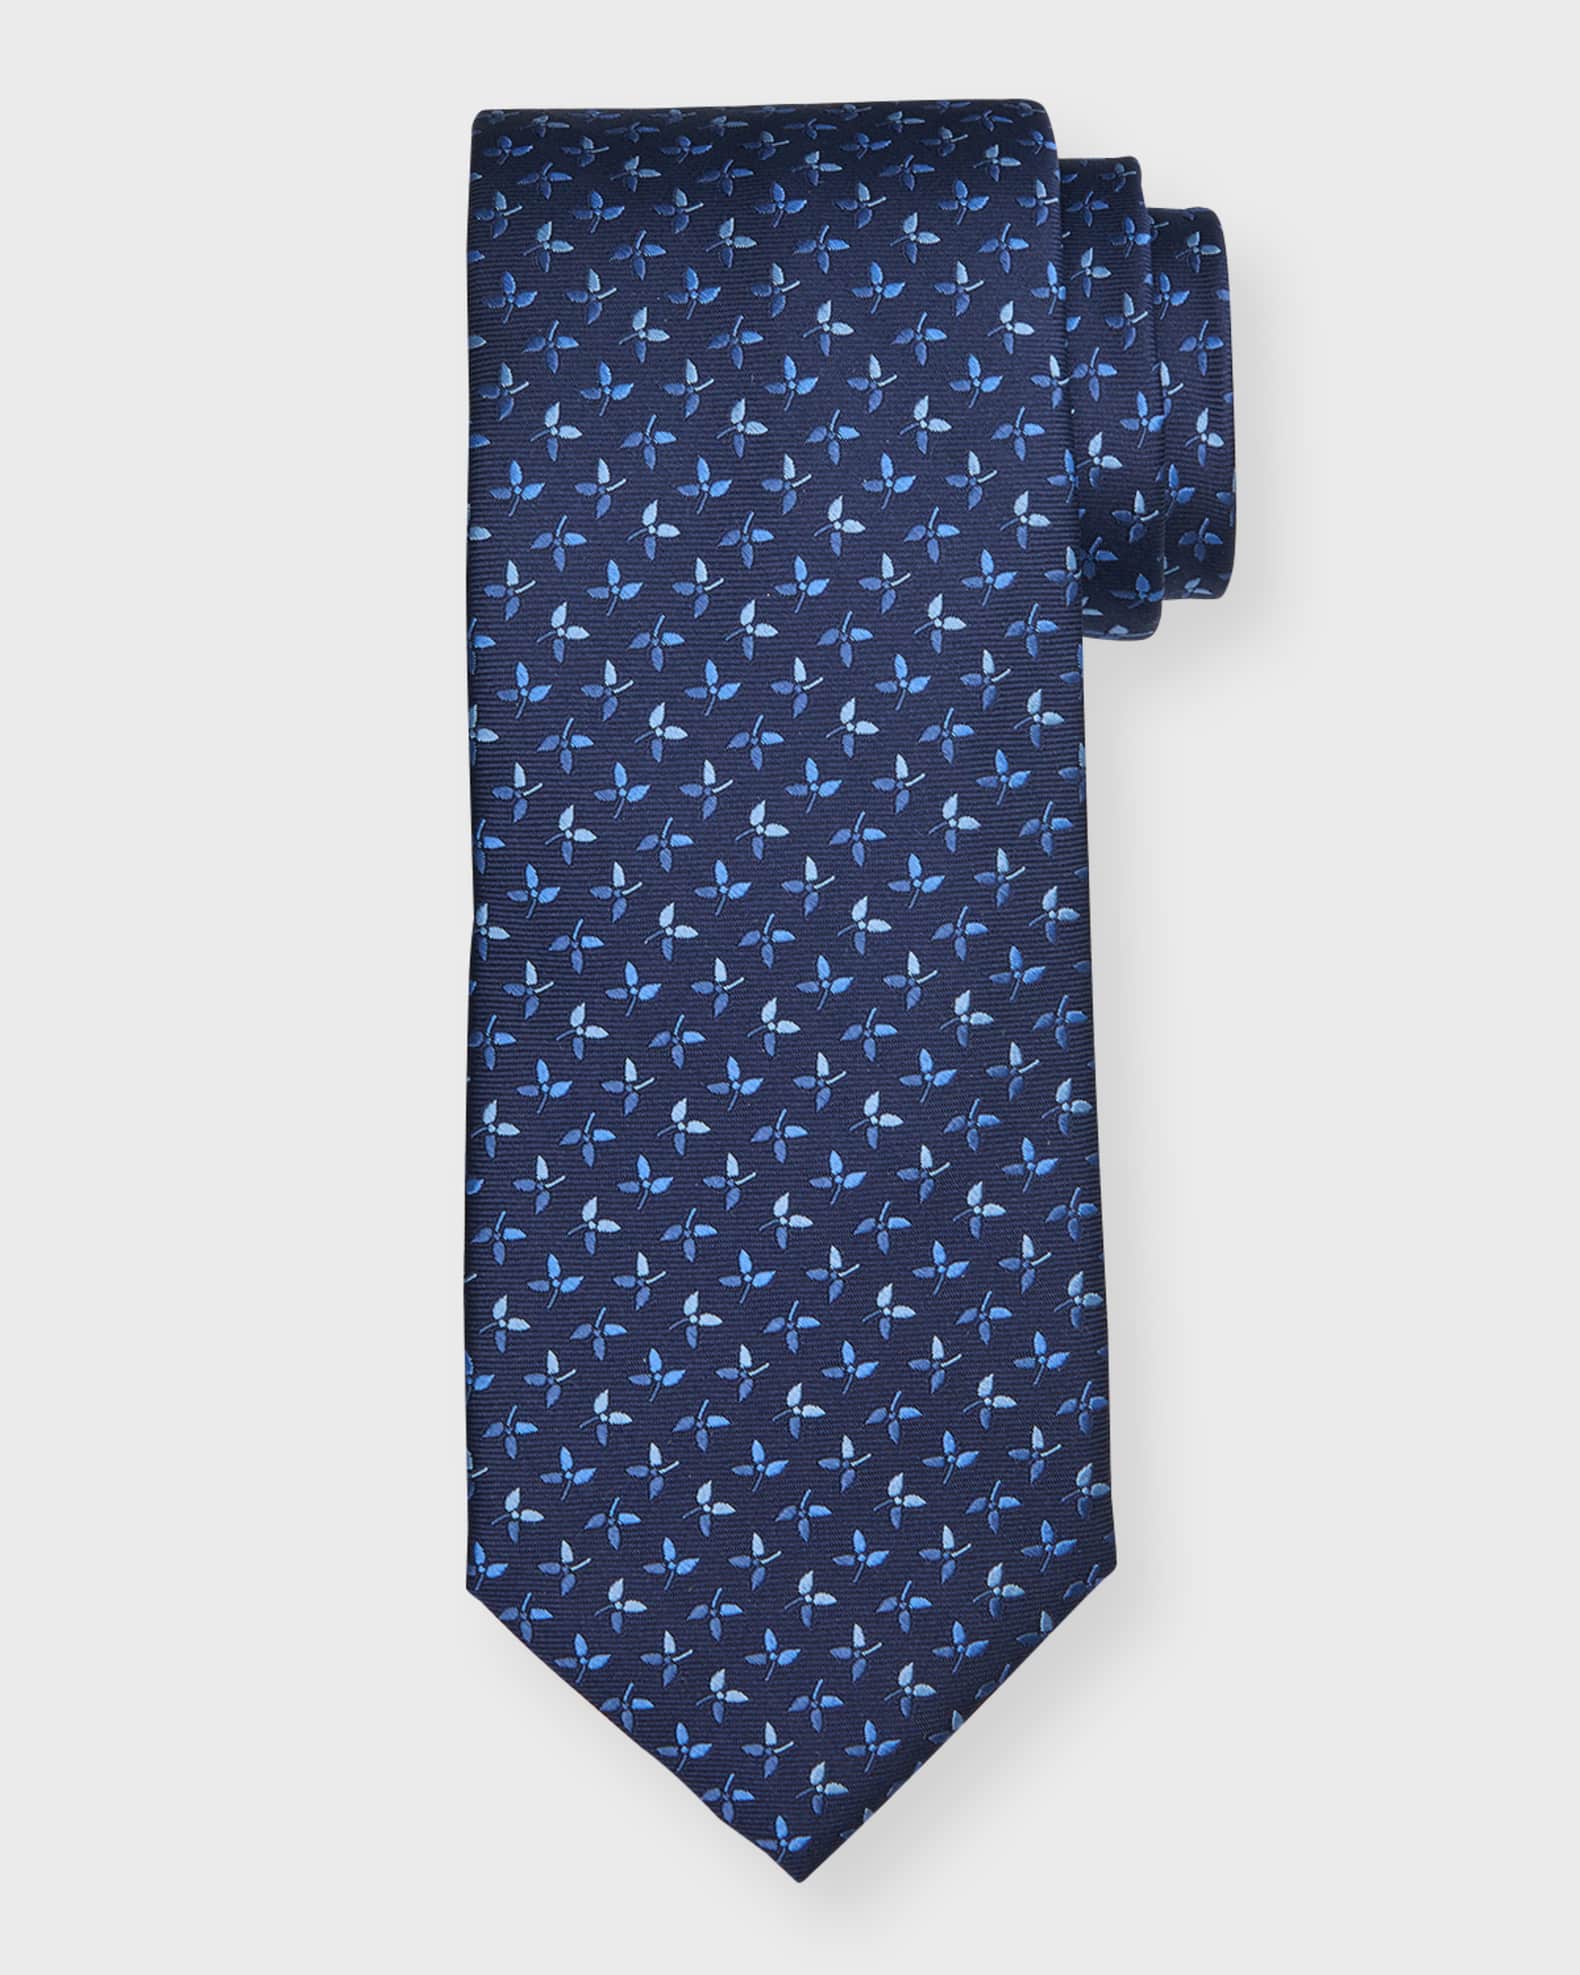 Brunello Cucinelli, Silk Tie with Floral Design, Blue, One Size